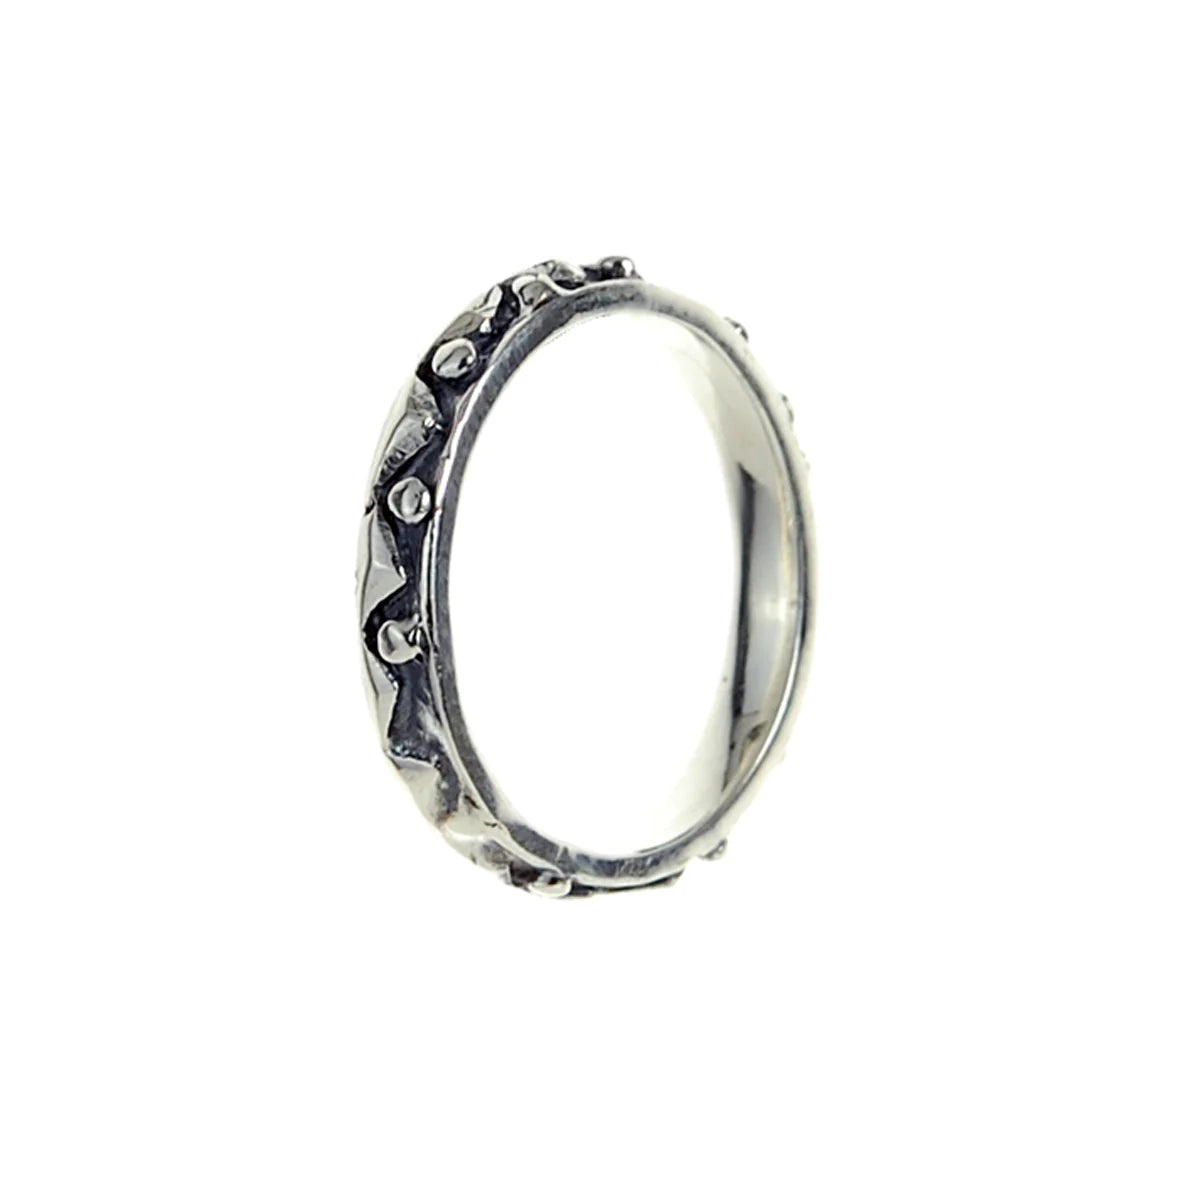 Silberner, schmaler Ring von Elf Craft mit einem dreieckigen Zick-Zack-Muster und runden Elementen